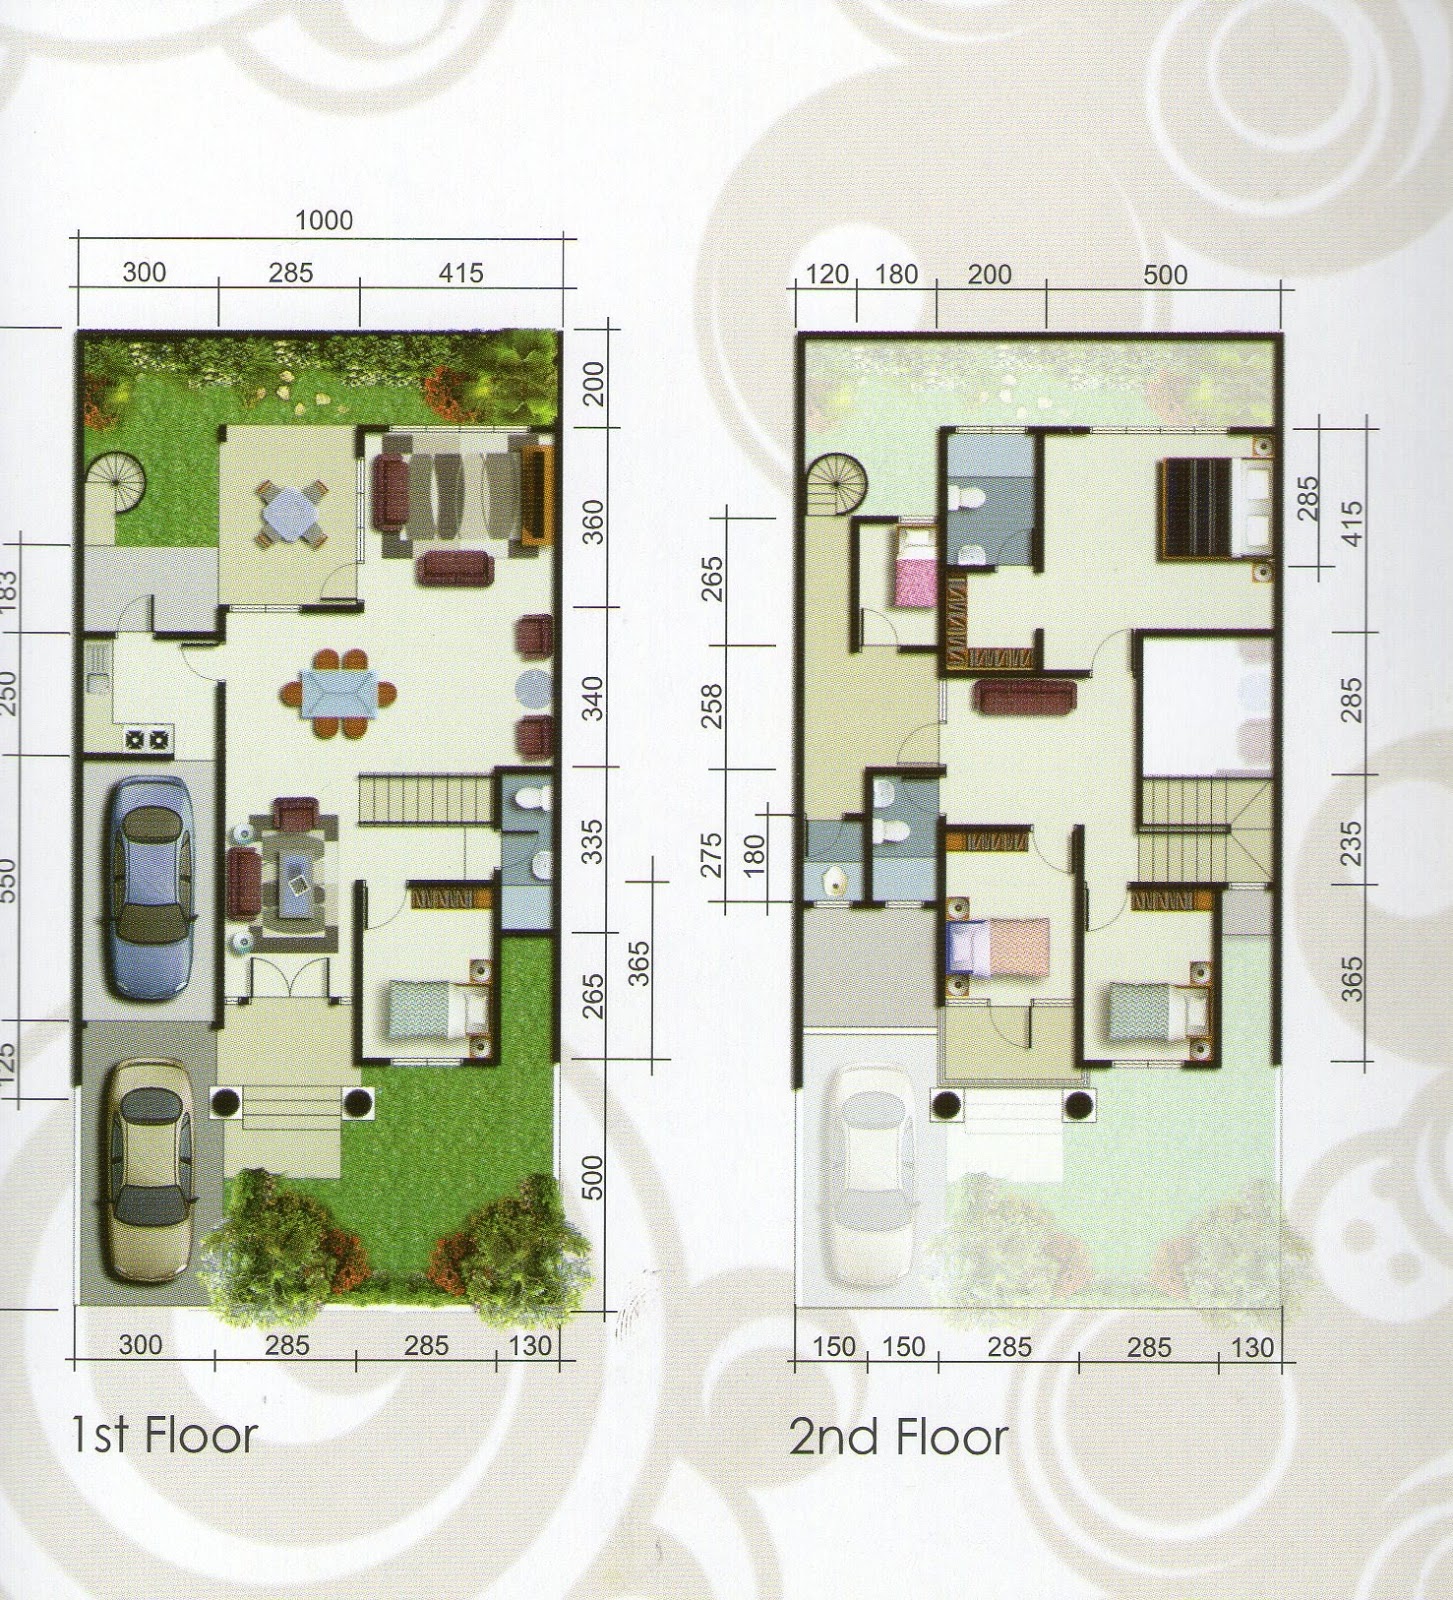 66 Desain Rumah Minimalis Luas Tanah 180 Desain Rumah Minimalis